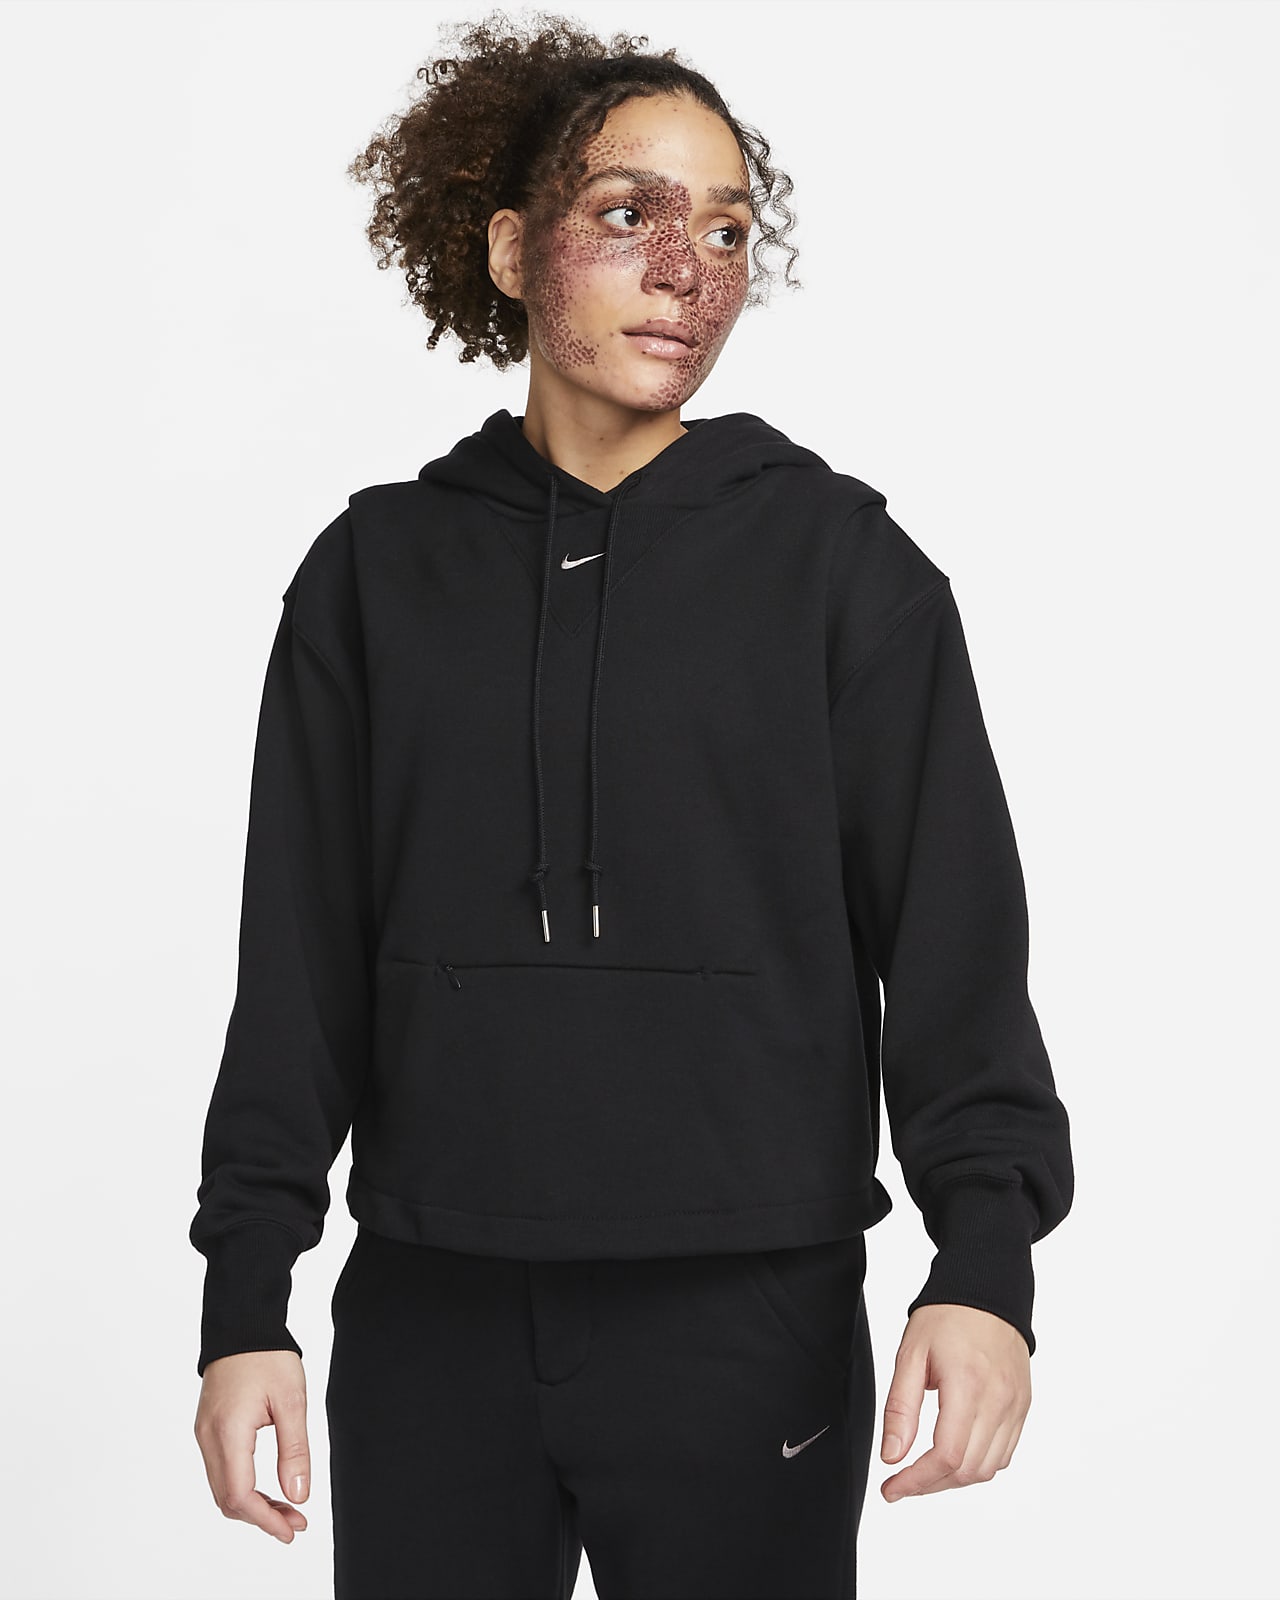 Γυναικεία μπλούζα με κουκούλα από ύφασμα French Terry σε φαρδιά γραμμή Nike Sportswear Modern Fleece